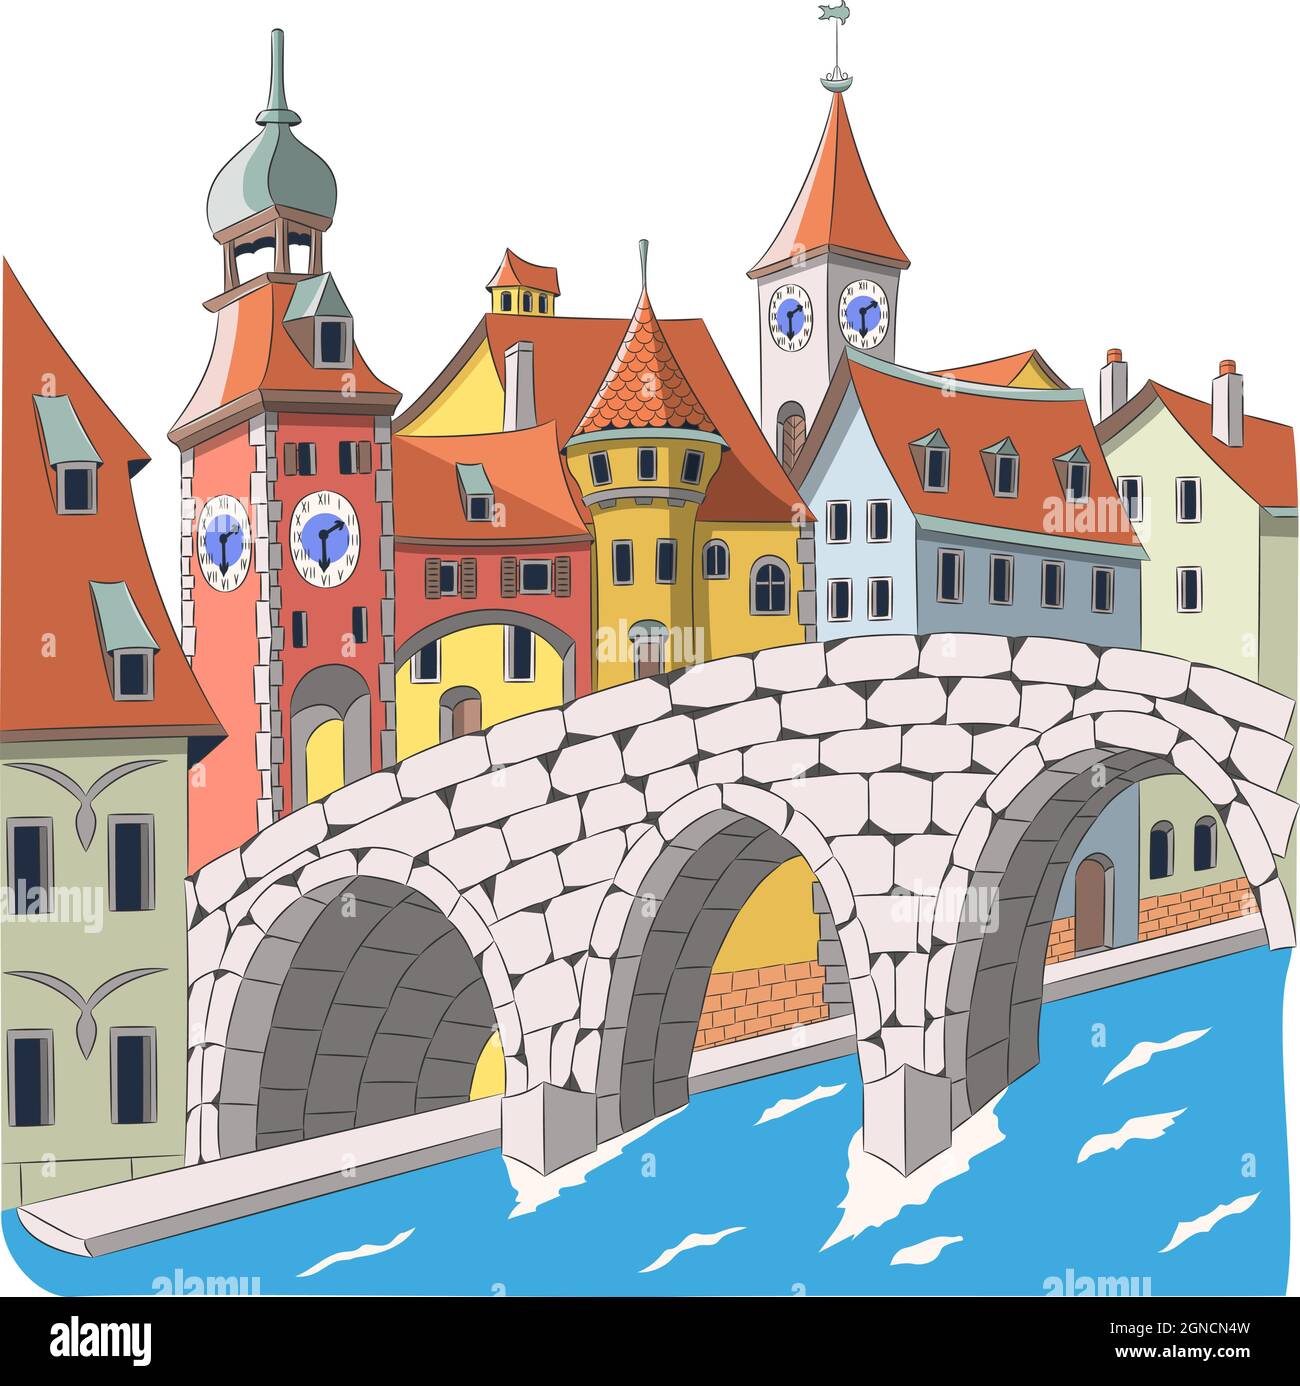 Die alte mittelalterliche Steinbrücke vor dem Hintergrund der bunten Häuser der Altstadt. Deutschland. Regensburg. Bayern. Vektorgrafik. Stock Vektor